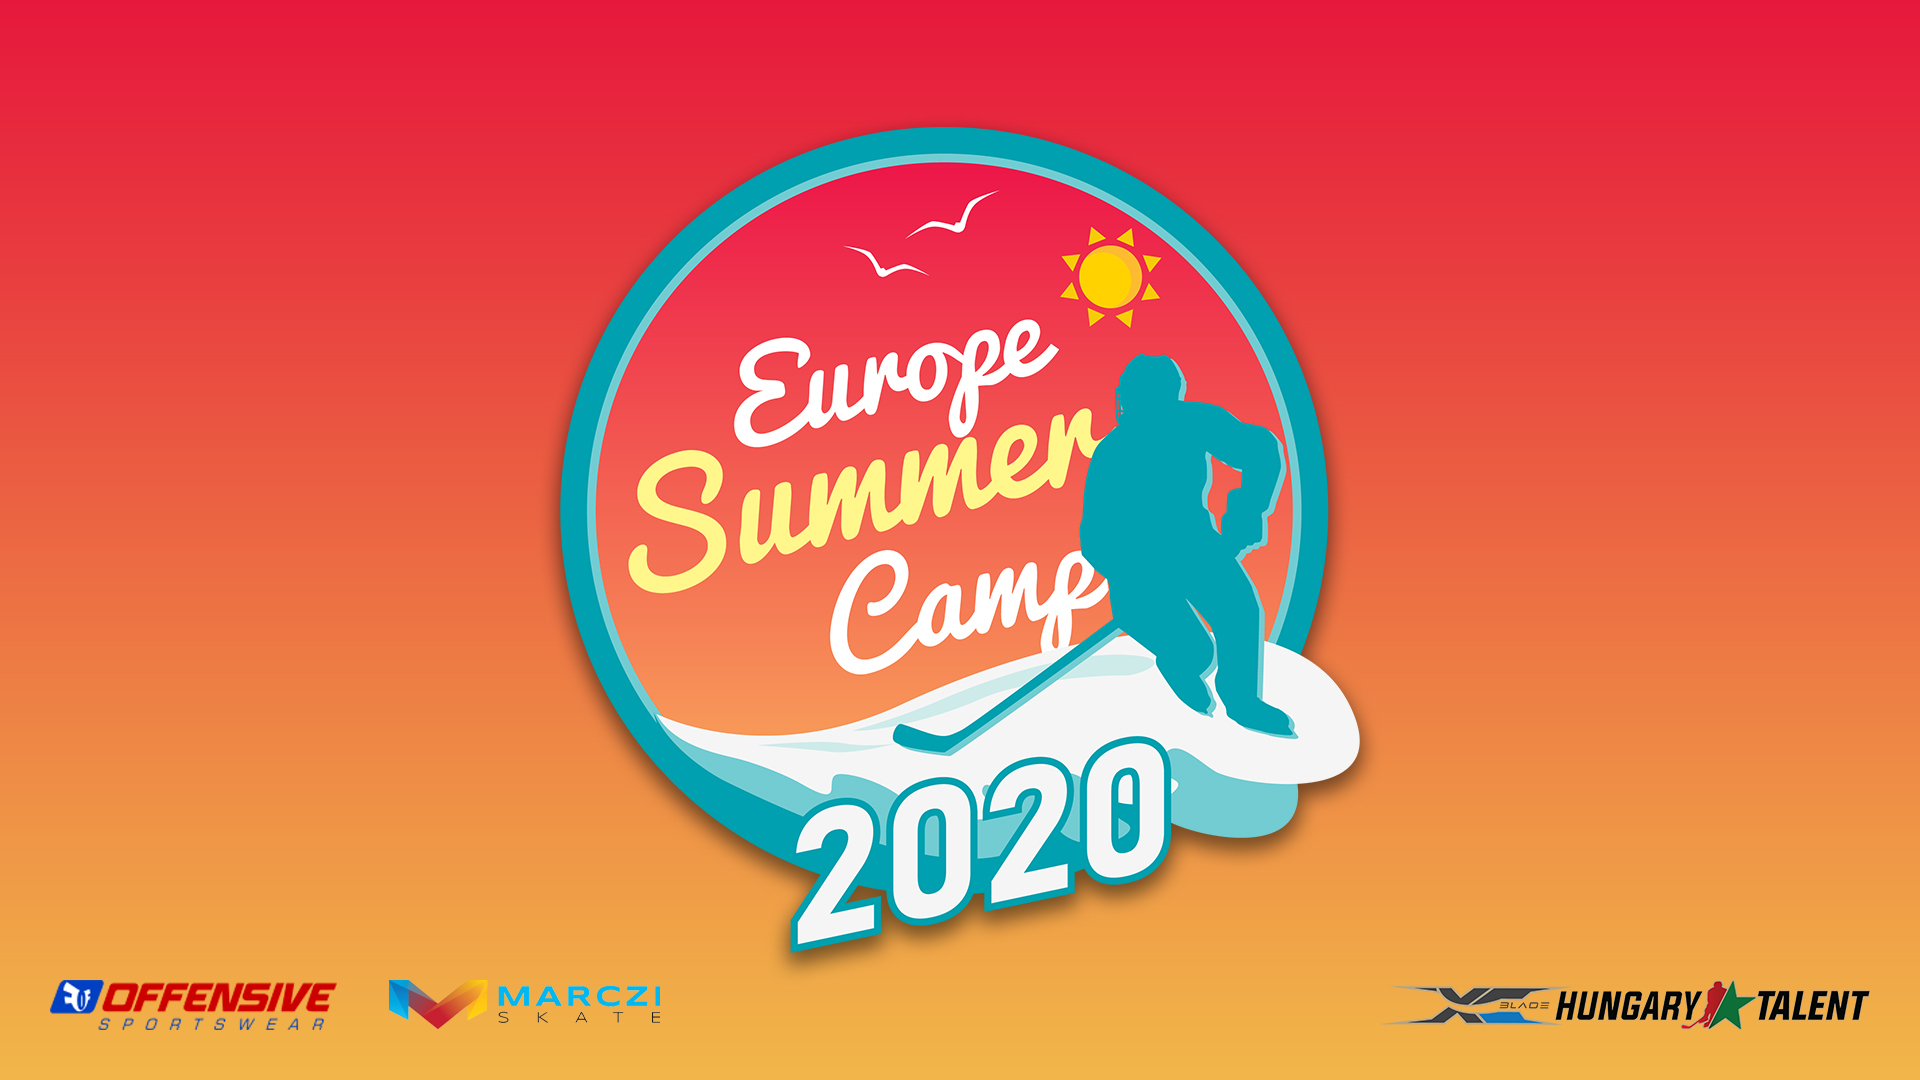 Registrácia do Europen Summer Campu 2020 je už spustená! 